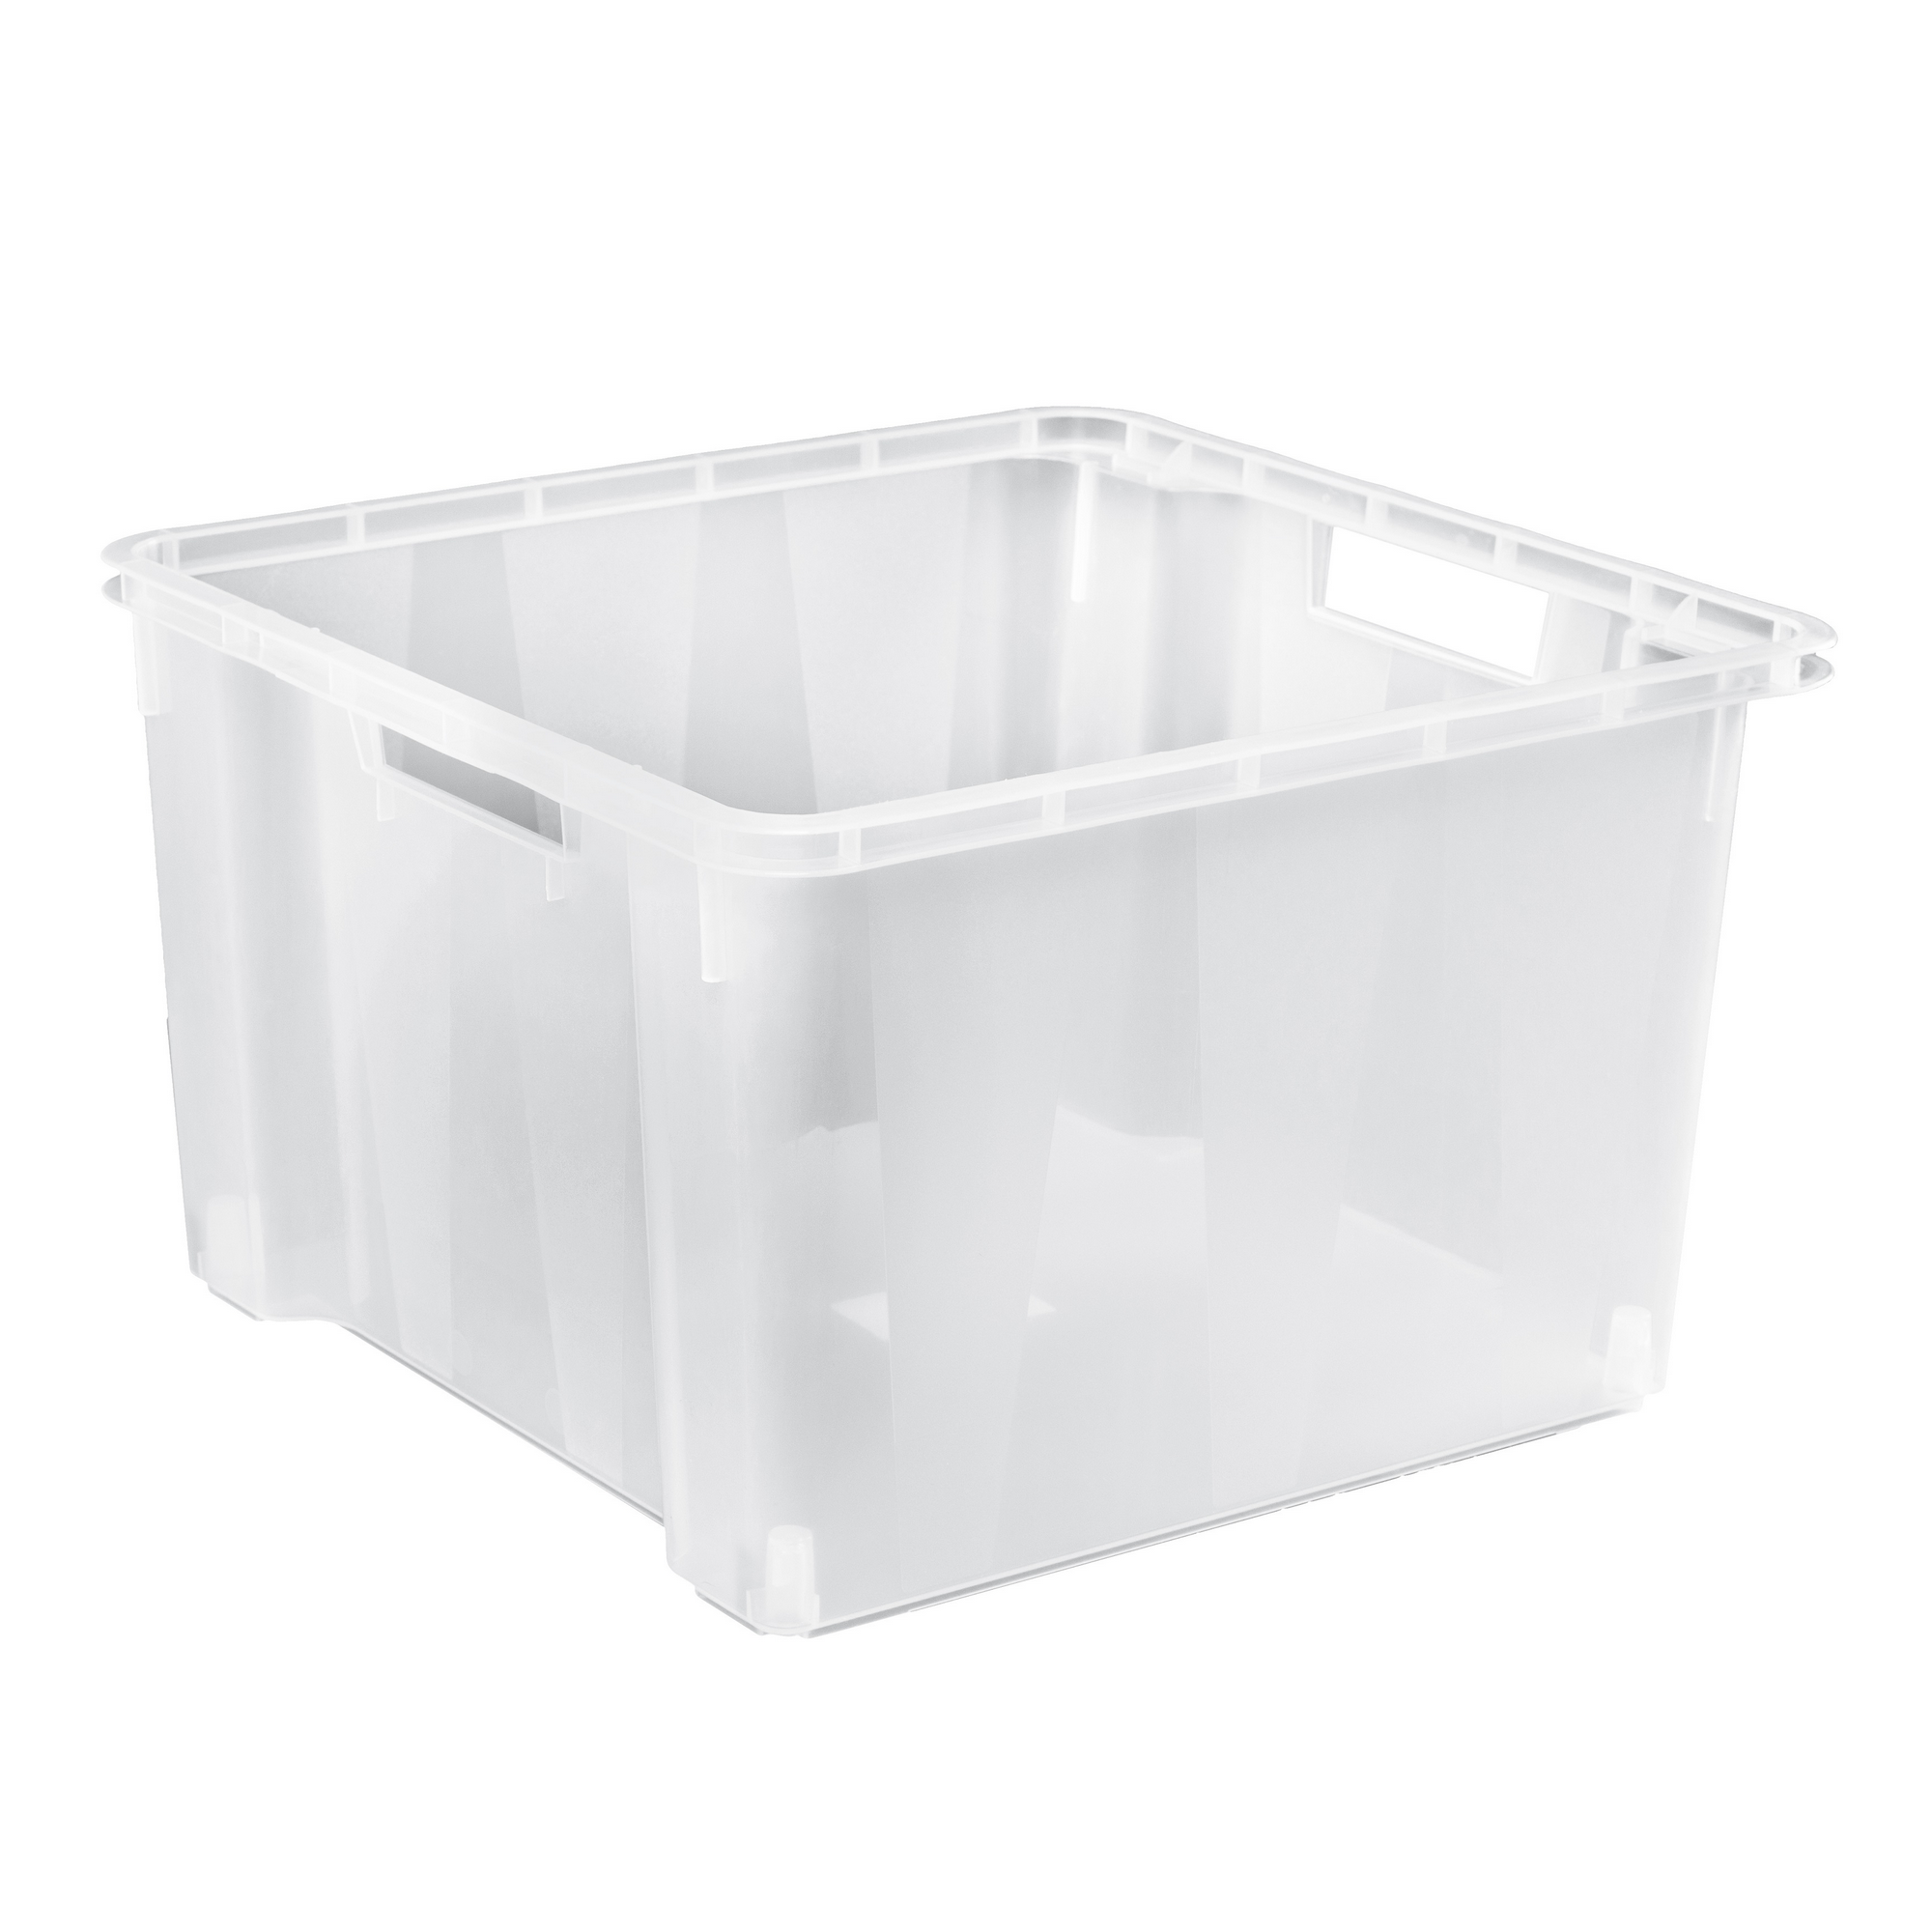 Aufbewahrungsbox transparent 38,5 x 39,5 x 27 cm, 20 l + product picture